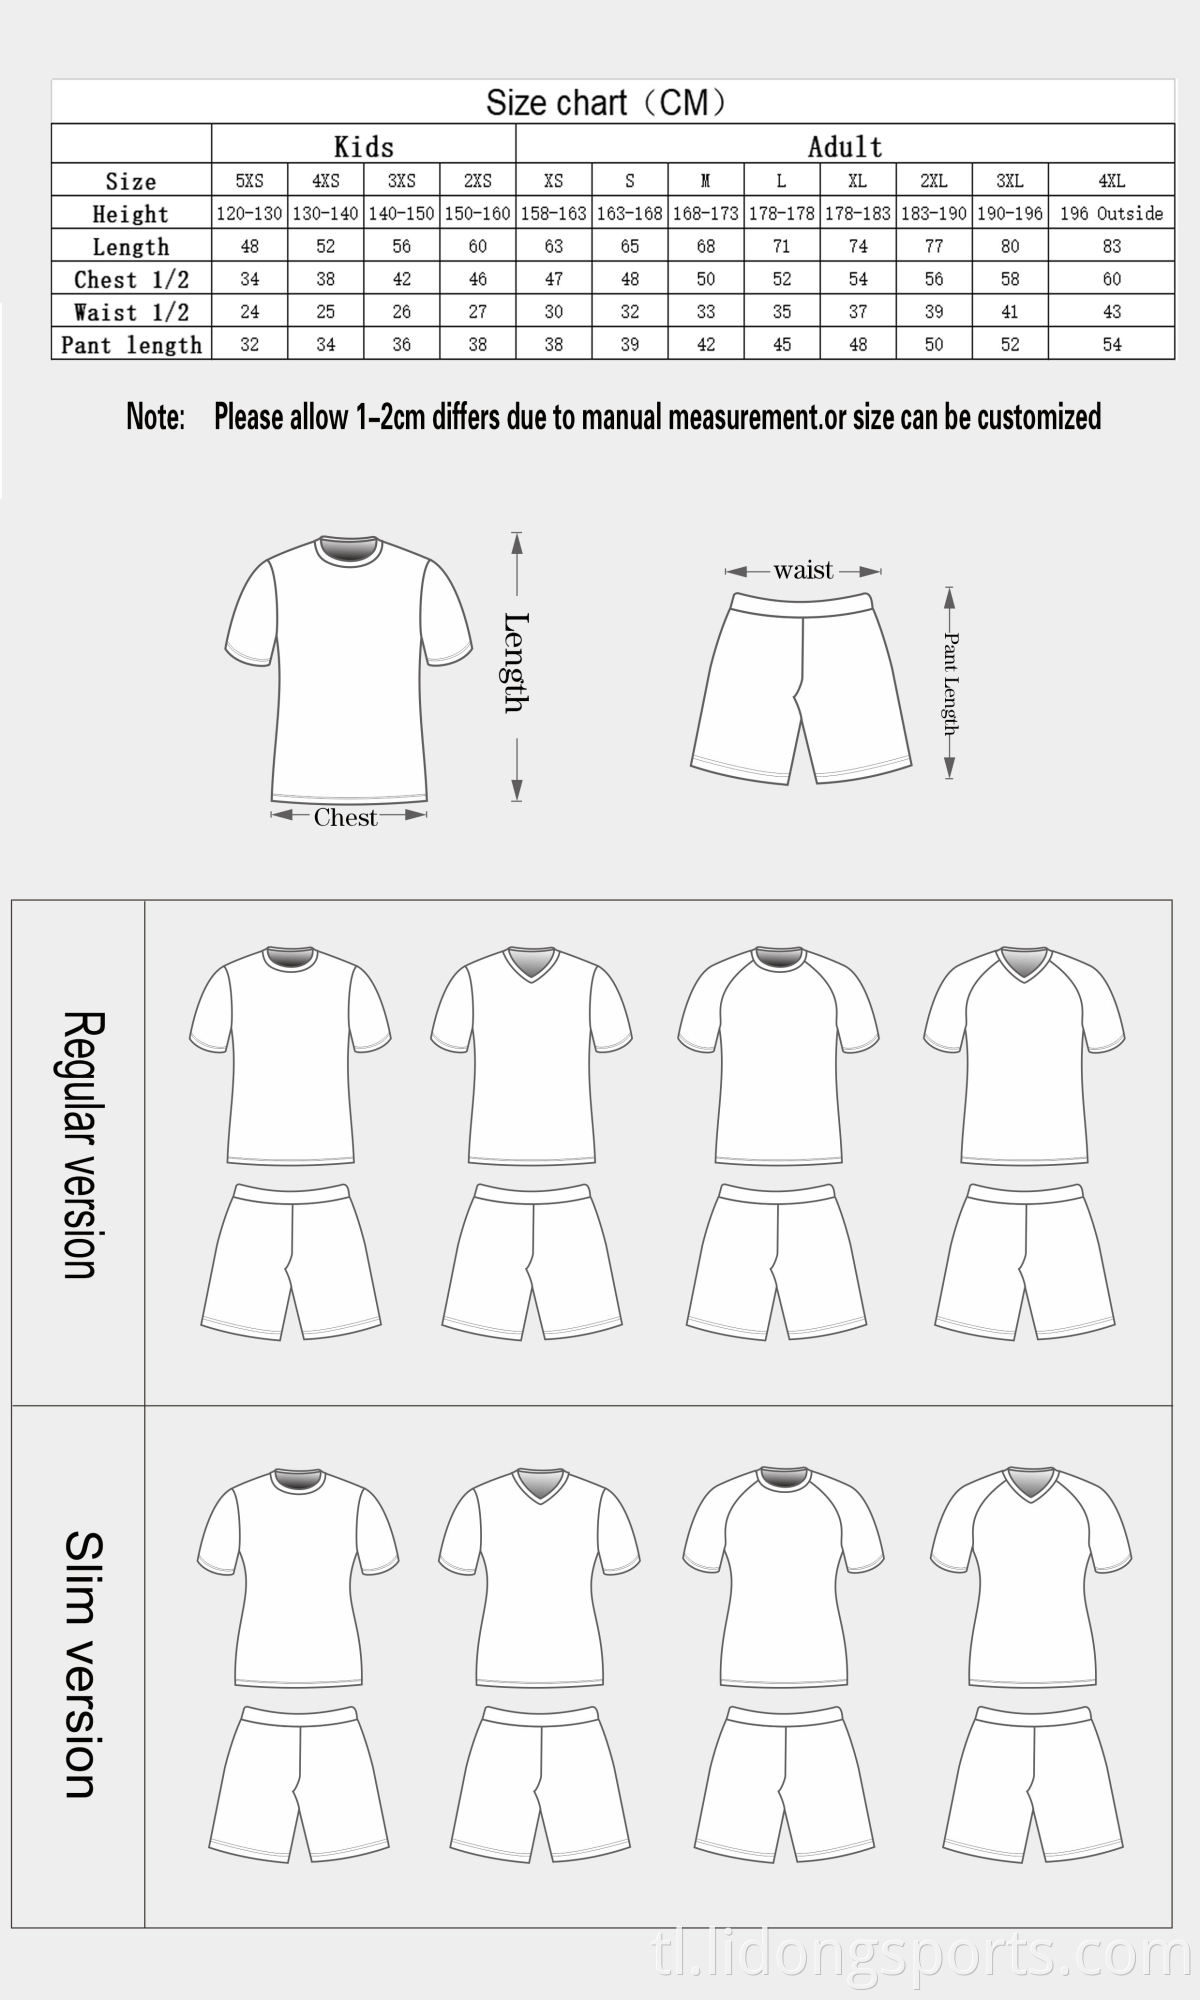 100% Polyester OEM Sublimation Custom Ginawa ang Mga Kabataan ng American Football Team Uniforms /American Football Jersey